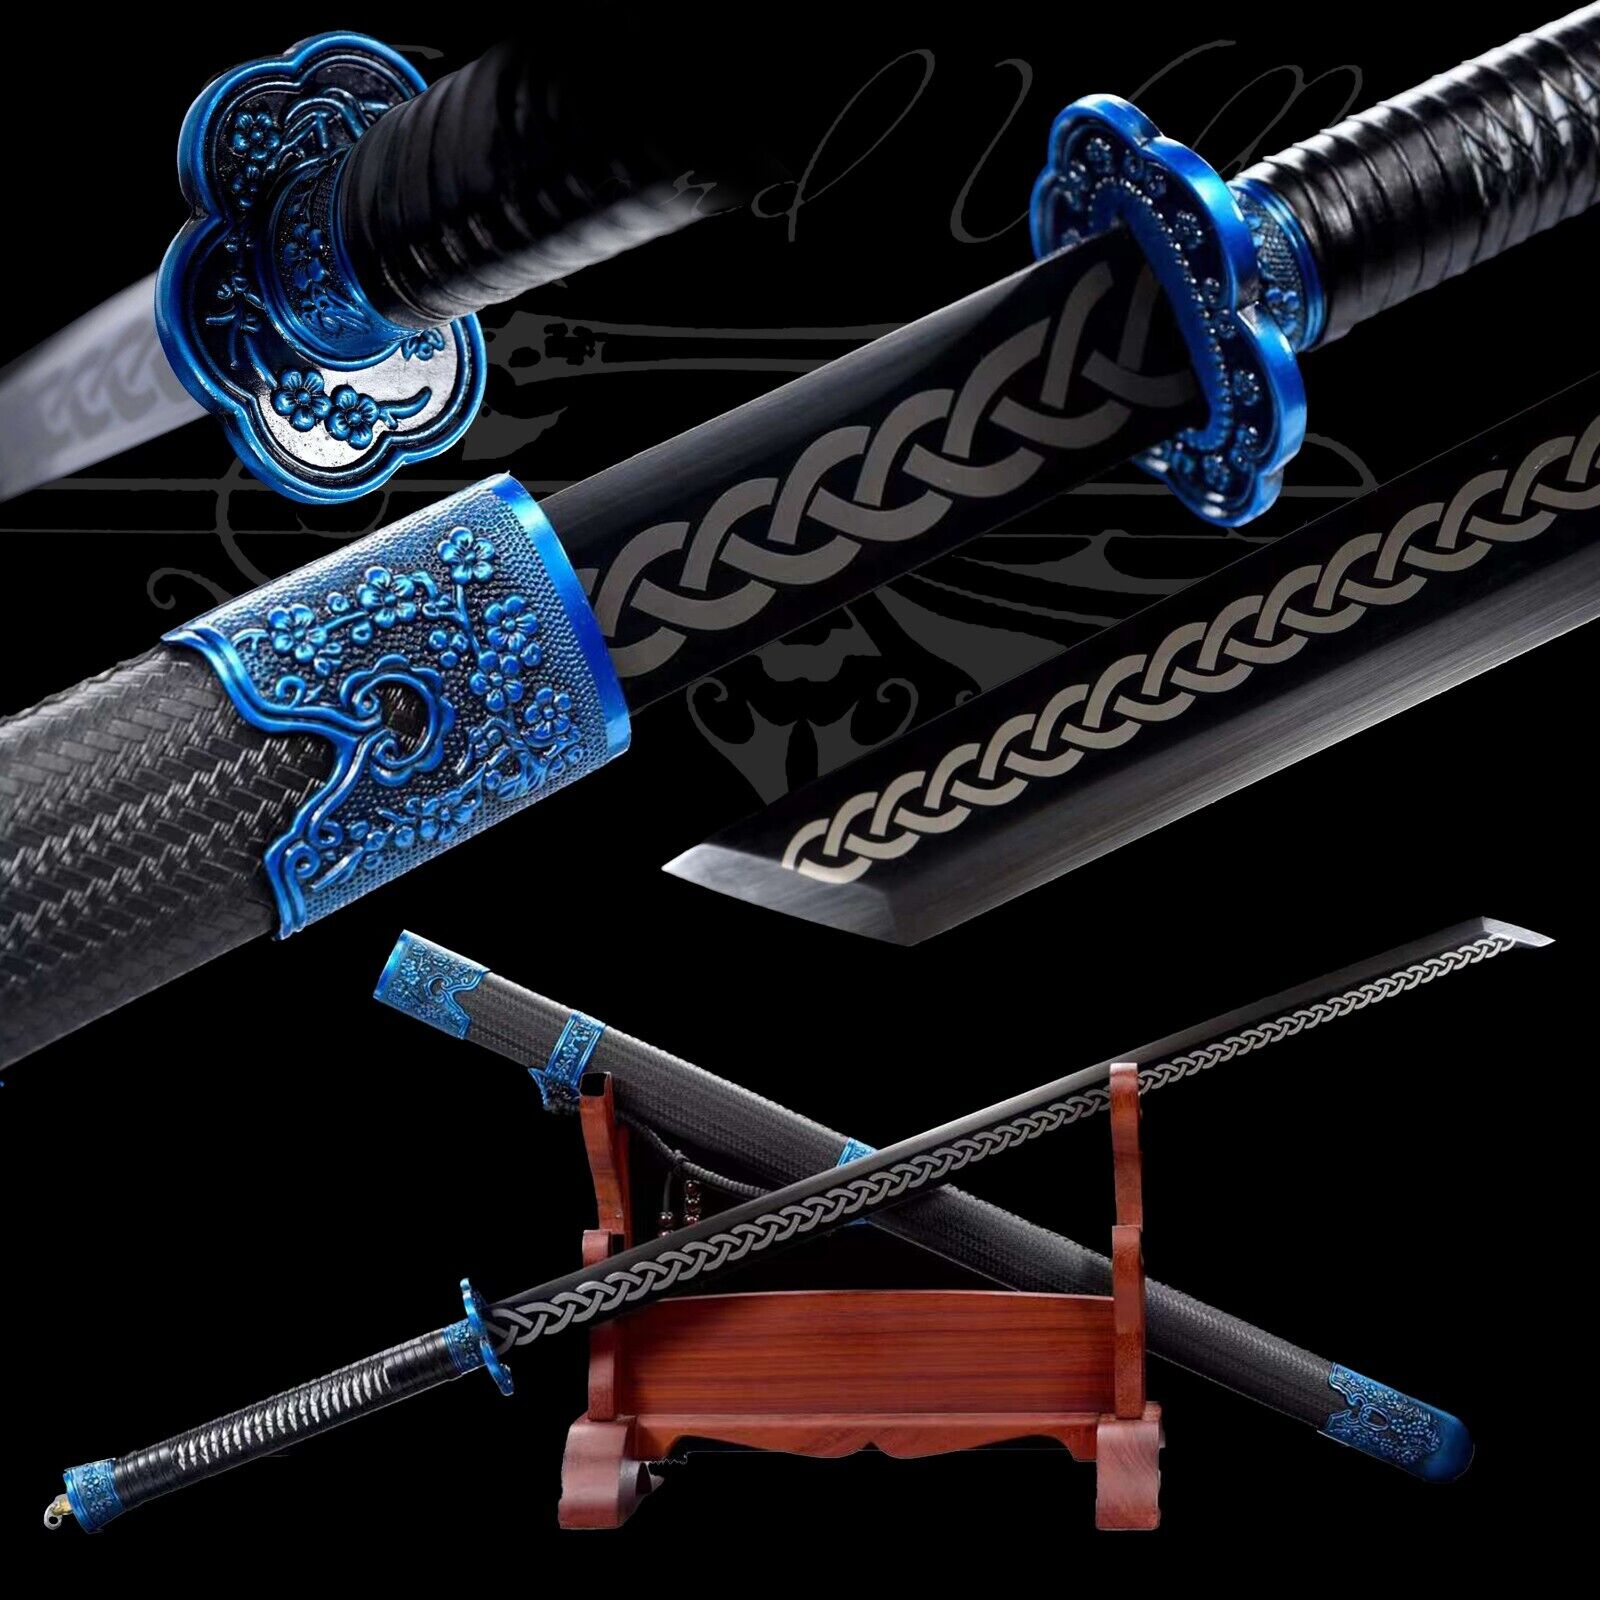 Handmade Katana/Manganese Steel/Sharp/Full Tang/Real Sword/Collectible/Blue